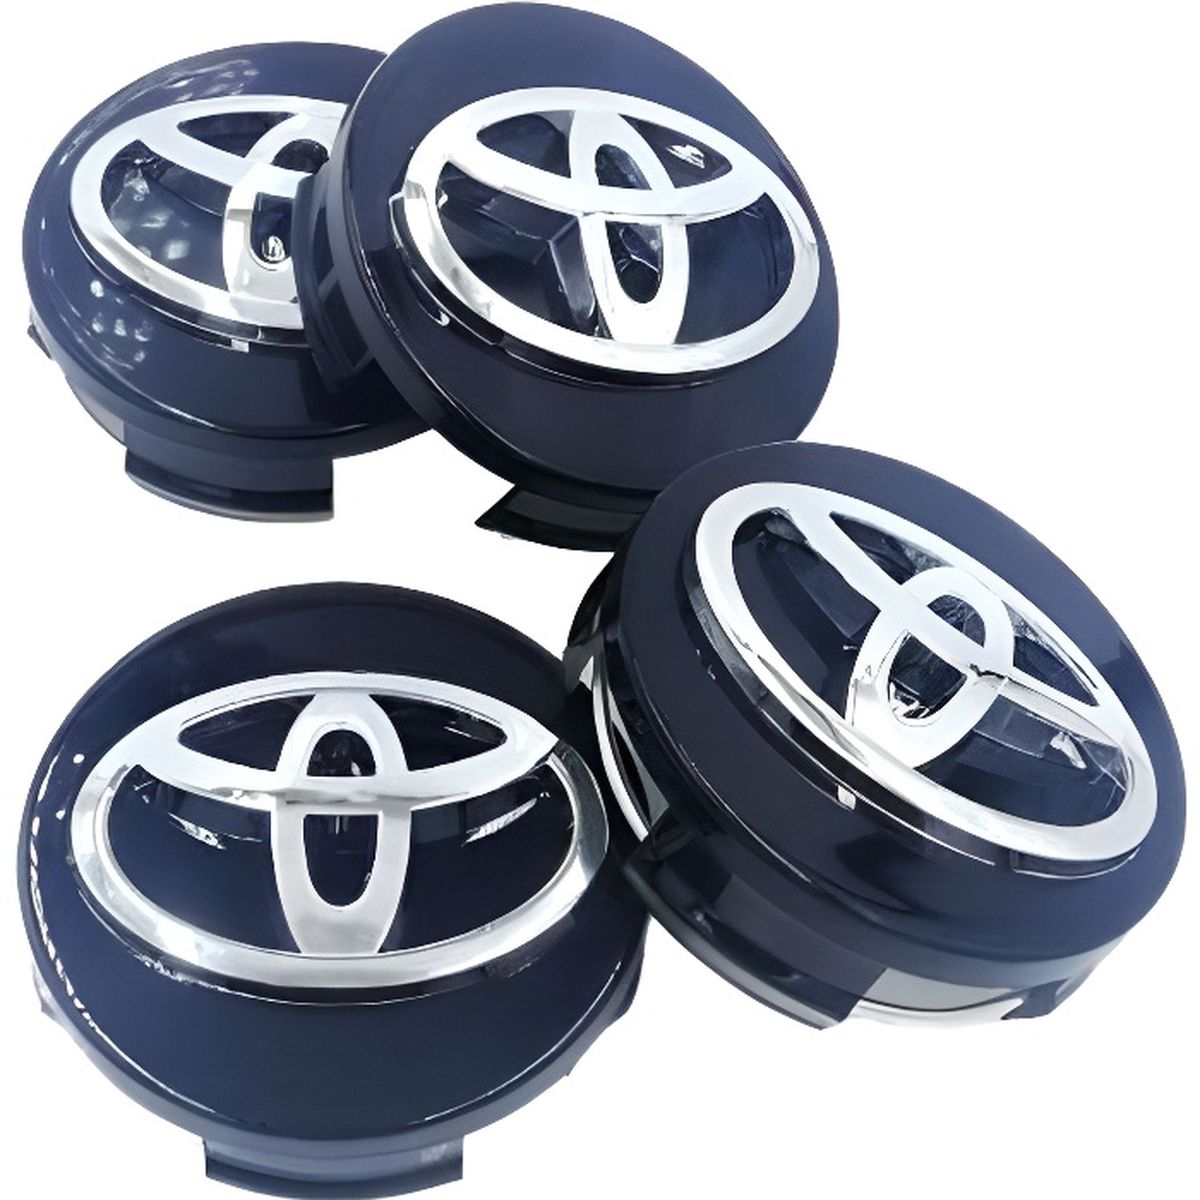 Xy® Auto Cache-moyeux avec Logo TRD pour Toyota Color : H2 CHAMRY Prado Yaris Crown 4PCS 60mm Emblem Centre de Roue de la Roue de la molette Caps Badge Couvre Accessoires de Voiture emblème